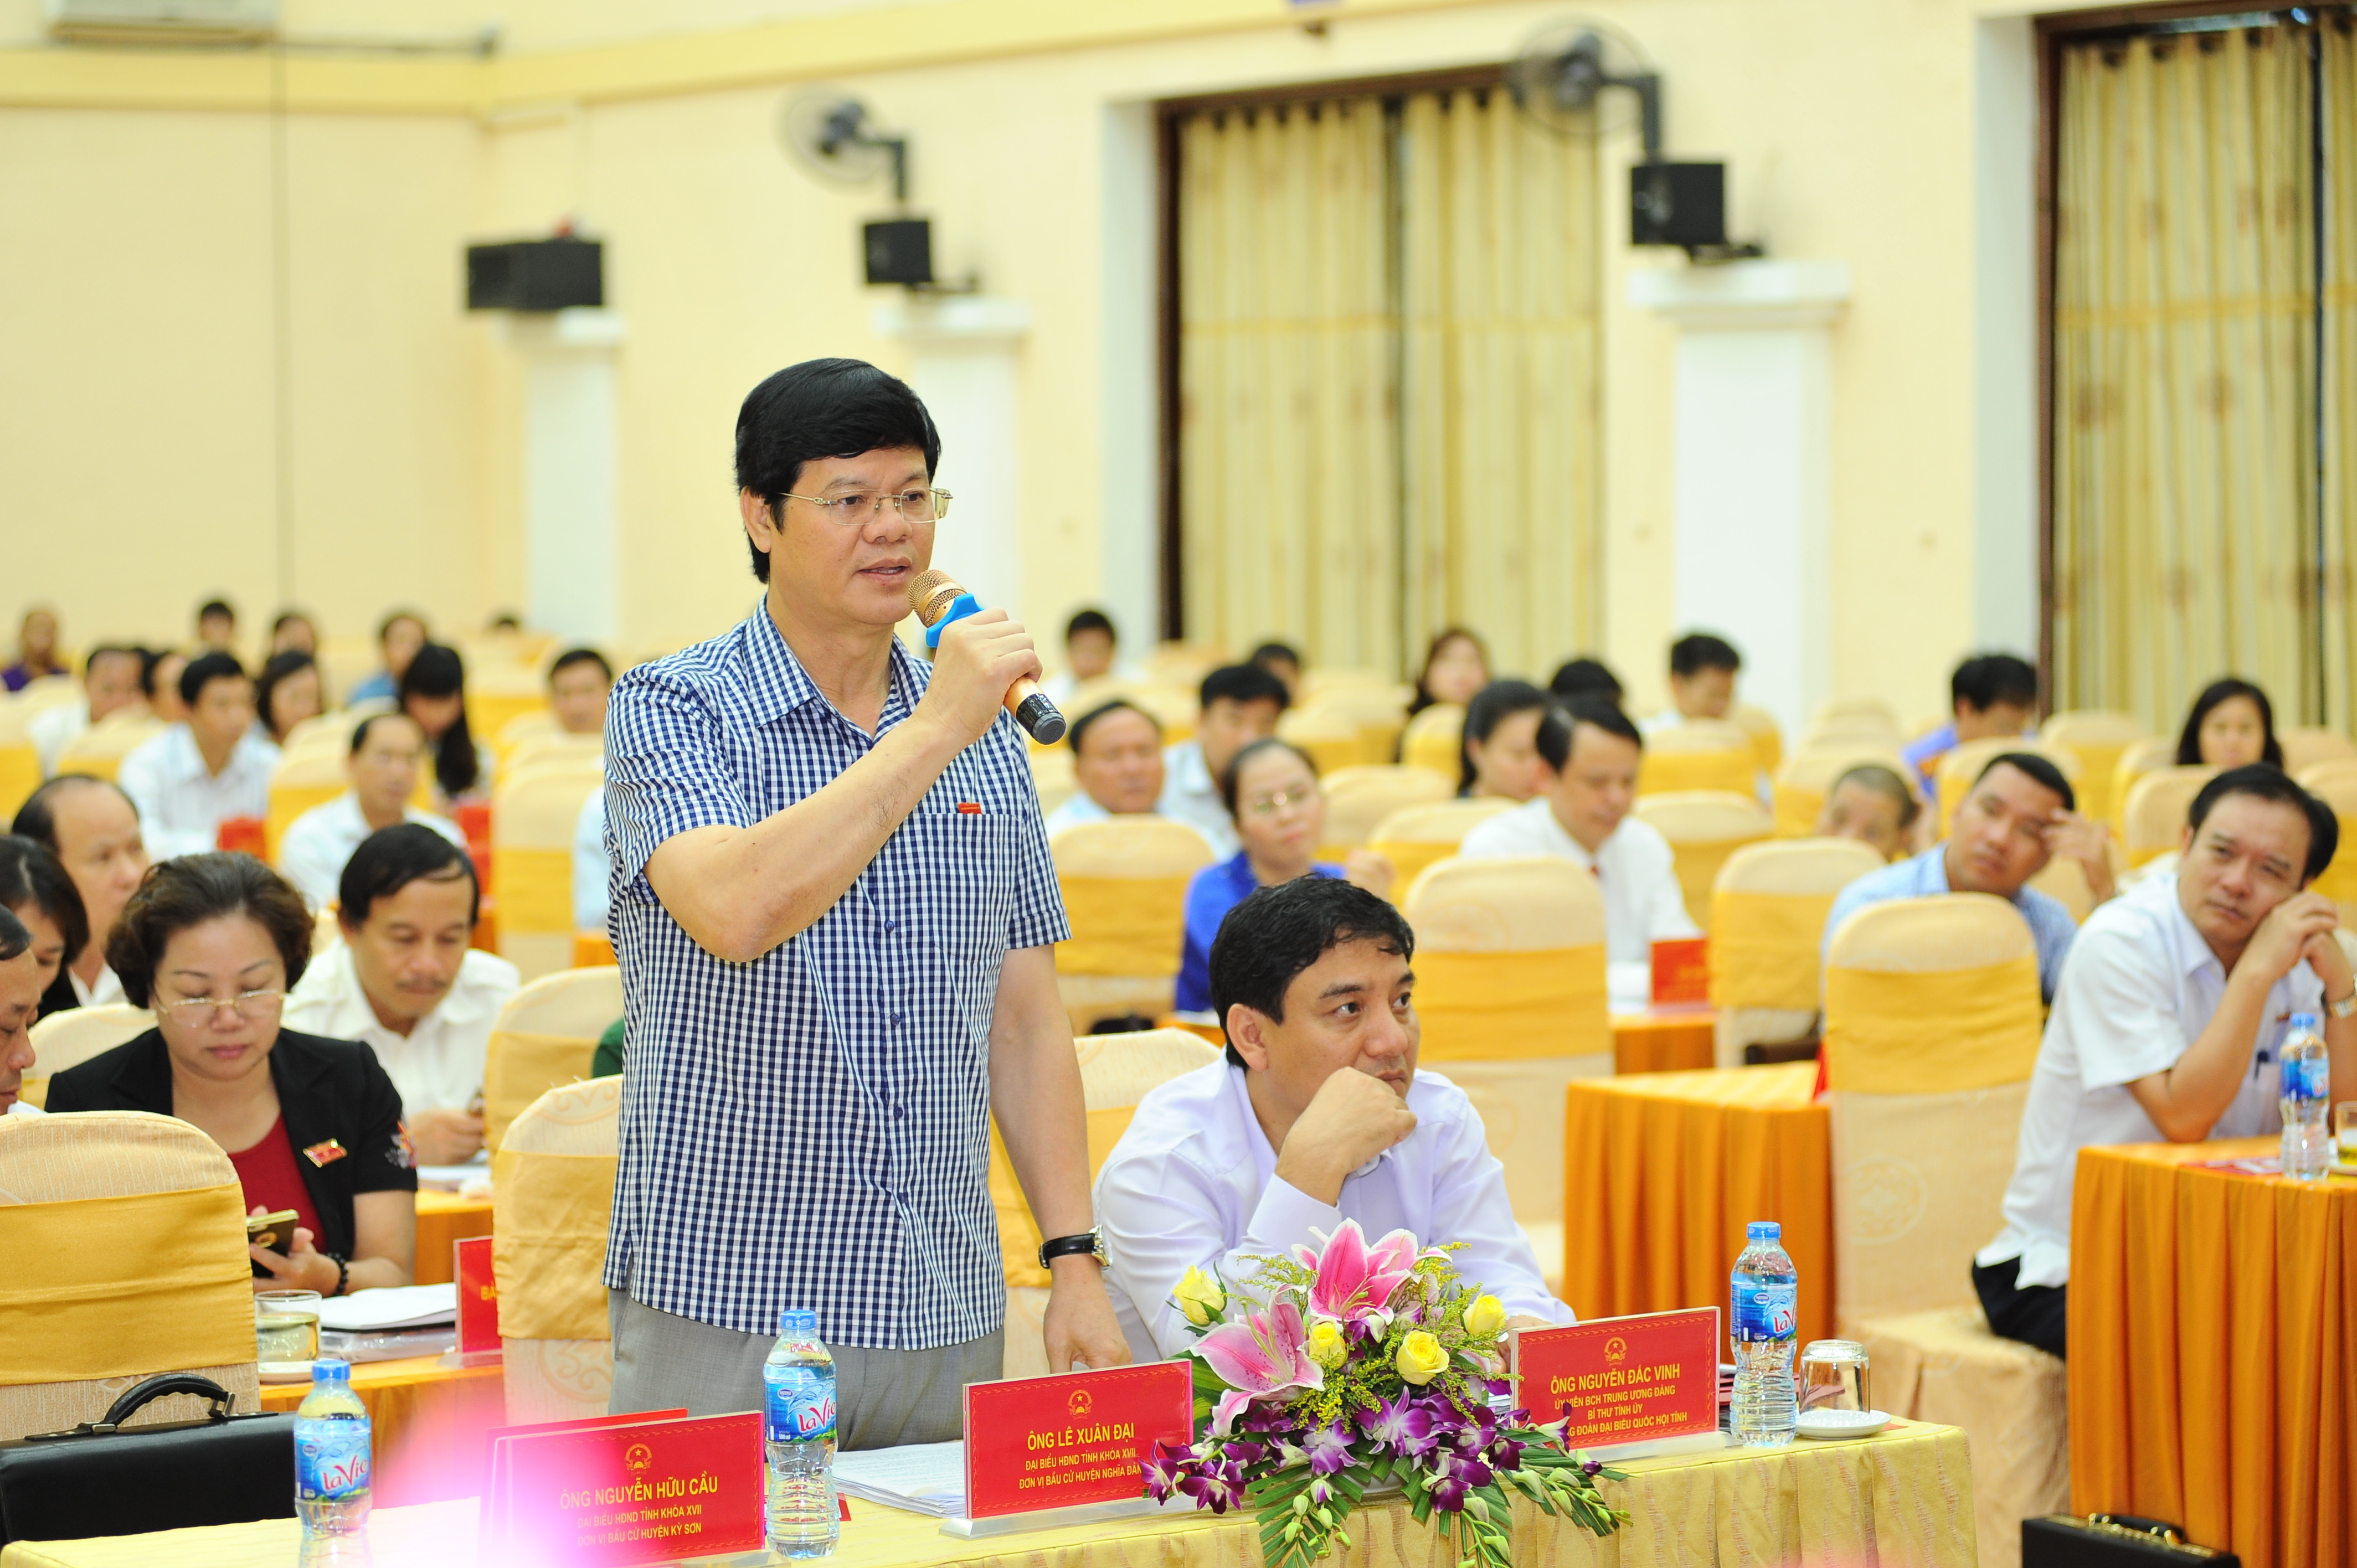 Phó Chủ tịch Thường trực UBND tỉnh Lê Xuân Đại đề nghị Ủy ban MTTQ tỉnh đổi mới nội dung, phương thức hoạt động, góp phần thúc đẩy sự phát triển chung của tỉnh.